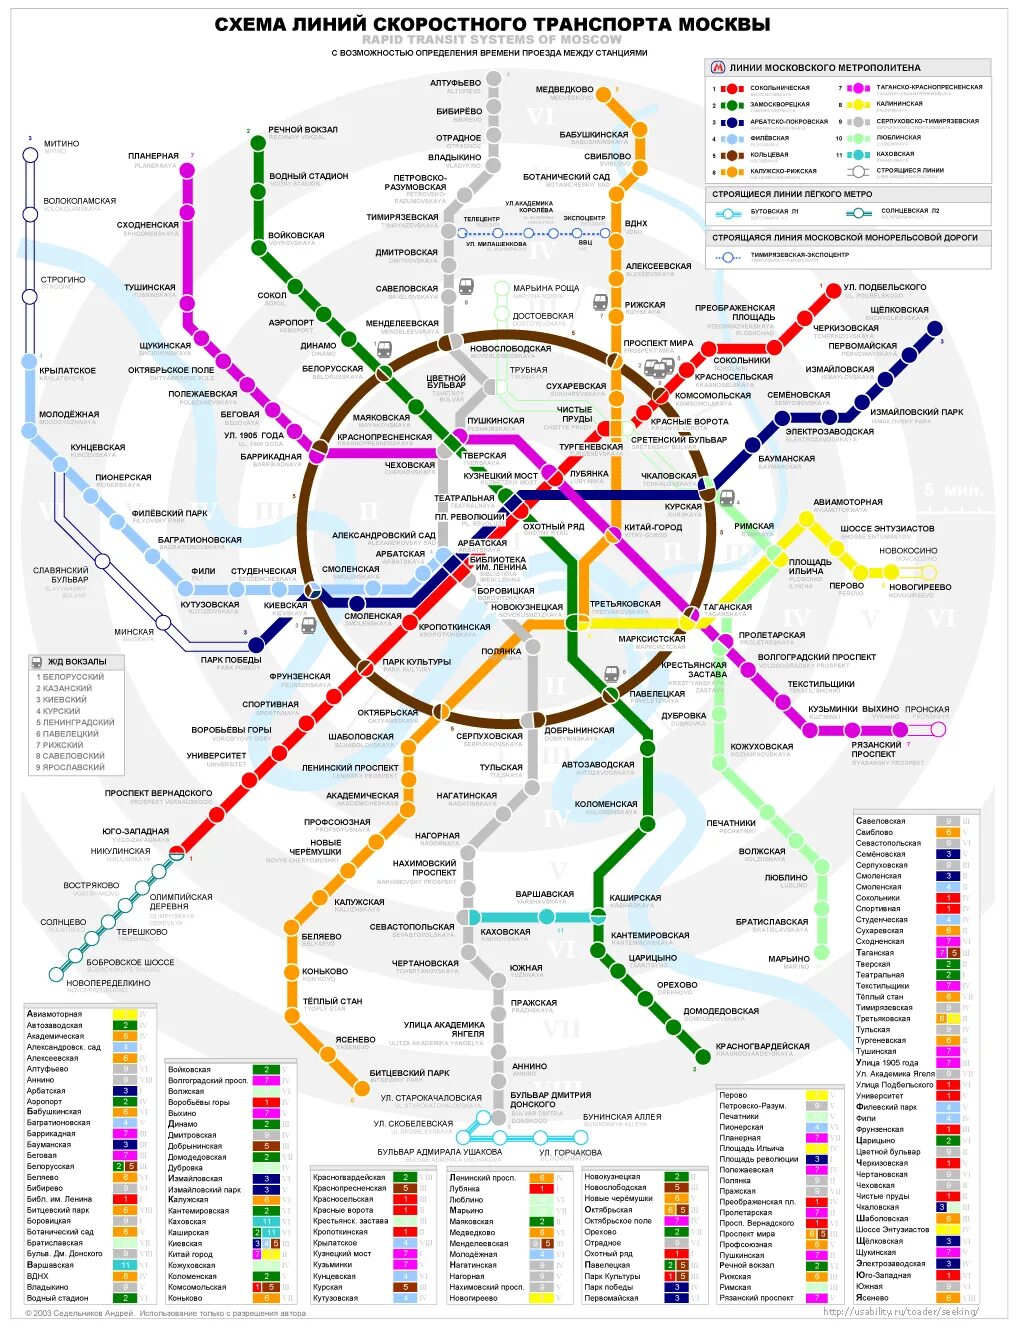 Сколько ездит метро. Карта метрополитена Москвы. Как пользоваться метро в Москве. Схема скоростного транспорта Москвы. Схема нового метро.